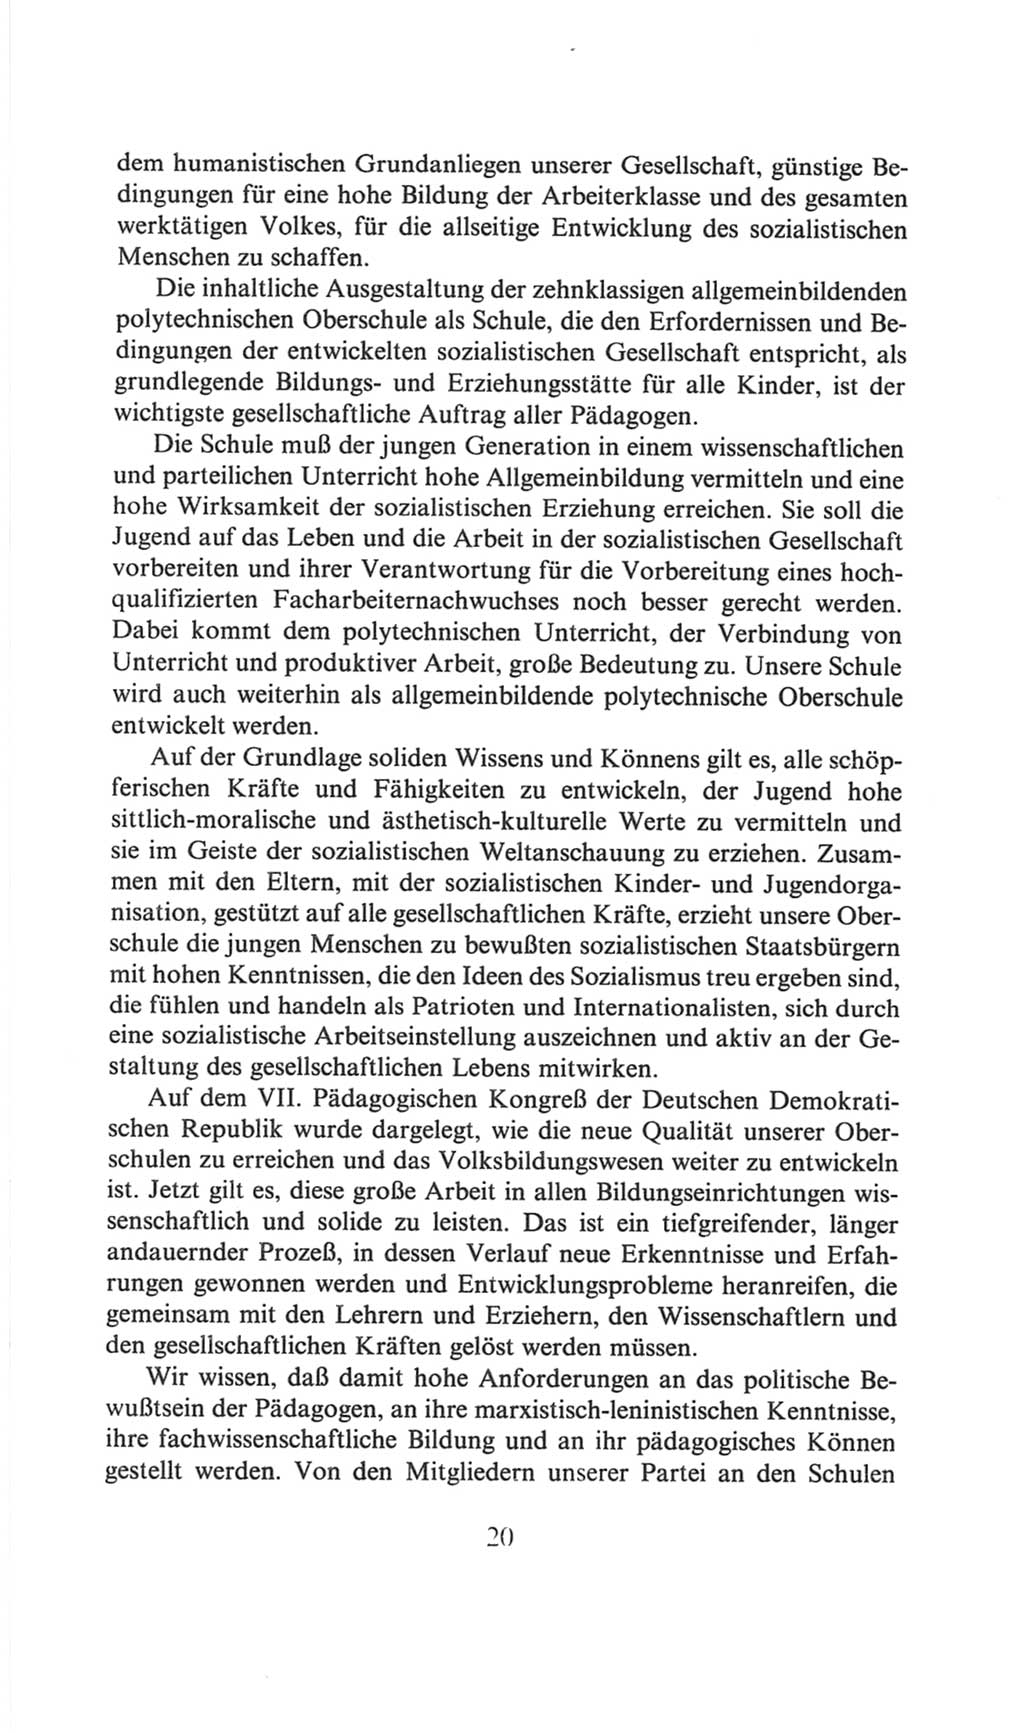 Volkskammer (VK) der Deutschen Demokratischen Republik (DDR), 6. Wahlperiode 1971-1976, Seite 20 (VK. DDR 6. WP. 1971-1976, S. 20)